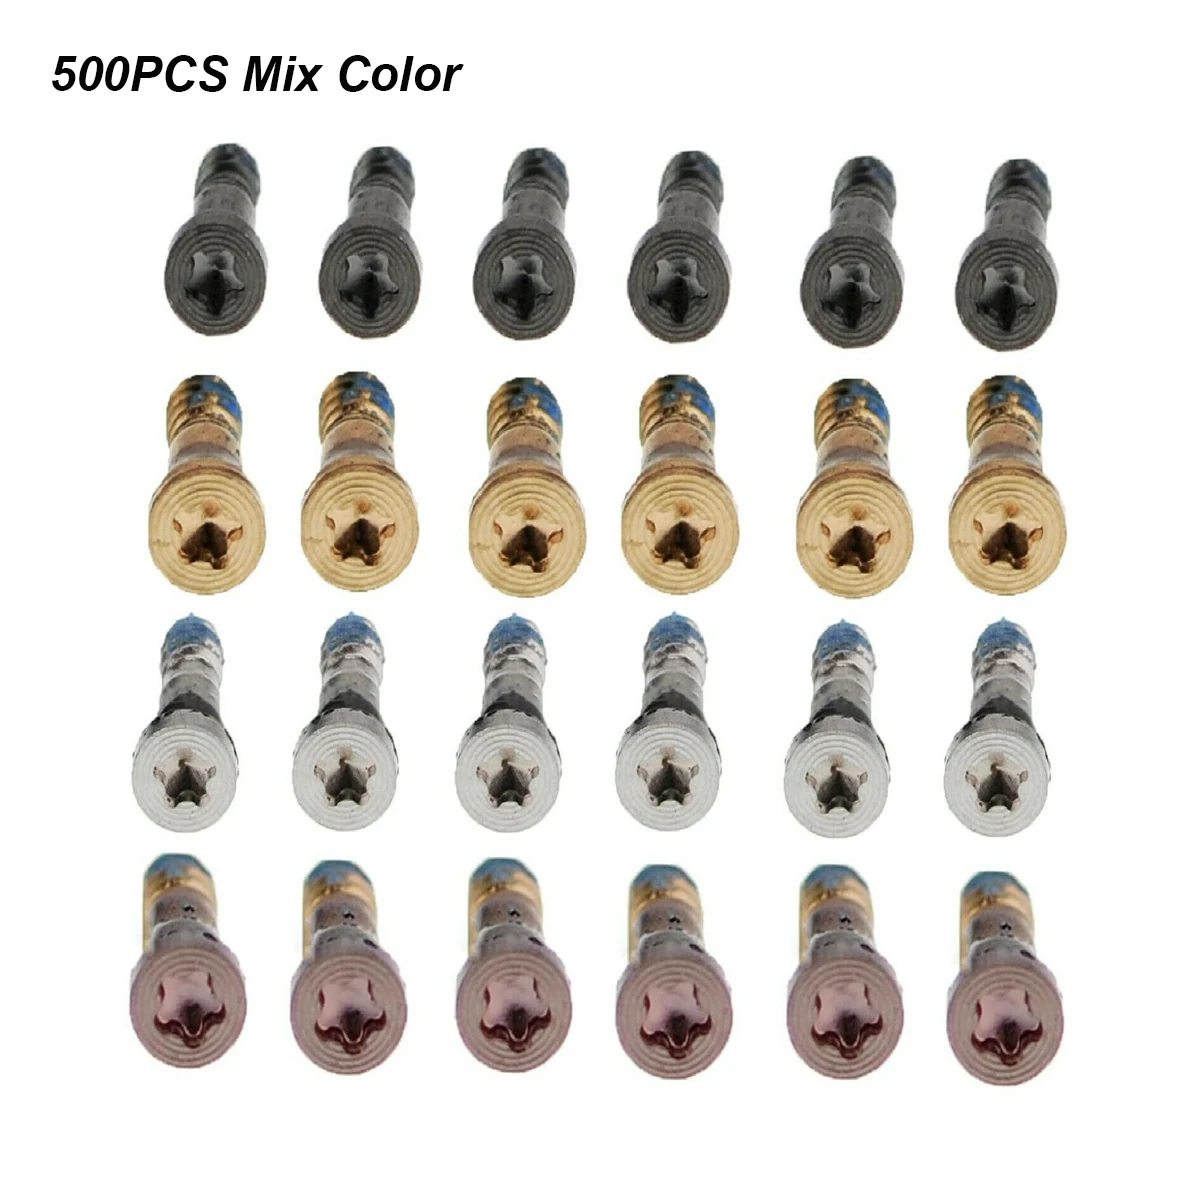 500PCS Bottom Pentalobe Screws for Apple iPhone 7 7 Plus 8 8 Plus 6 6SP 5 5S 13 12 11 pro max X Xs max Screw Replacement